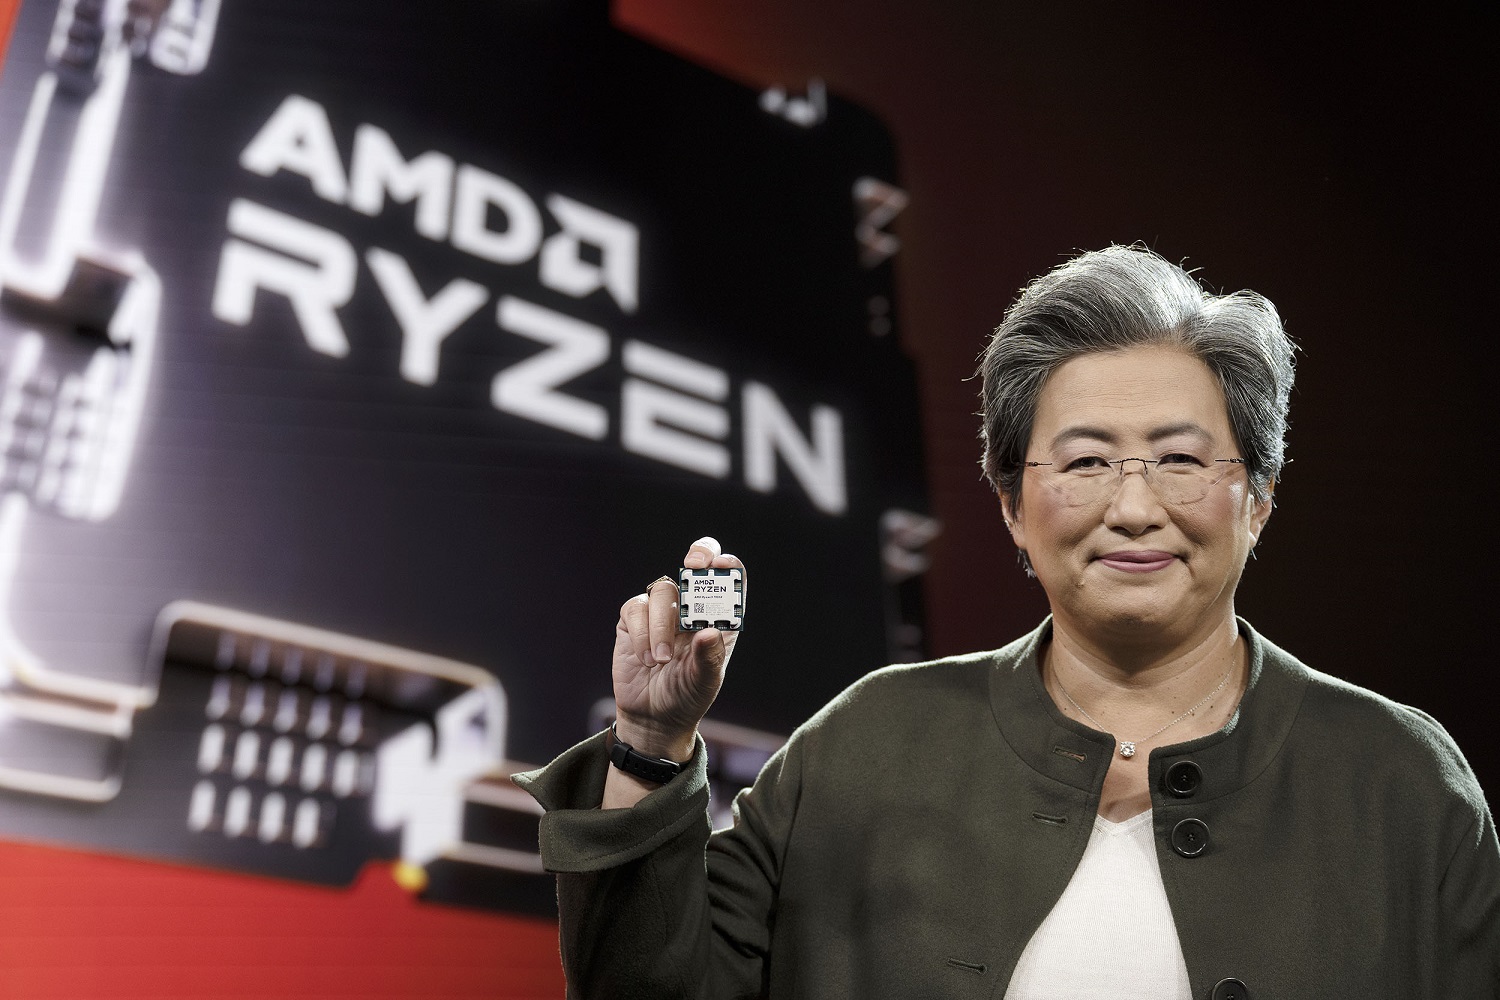 AMD says the $300 Ryzen 5 7600X beats Intel's best by 17